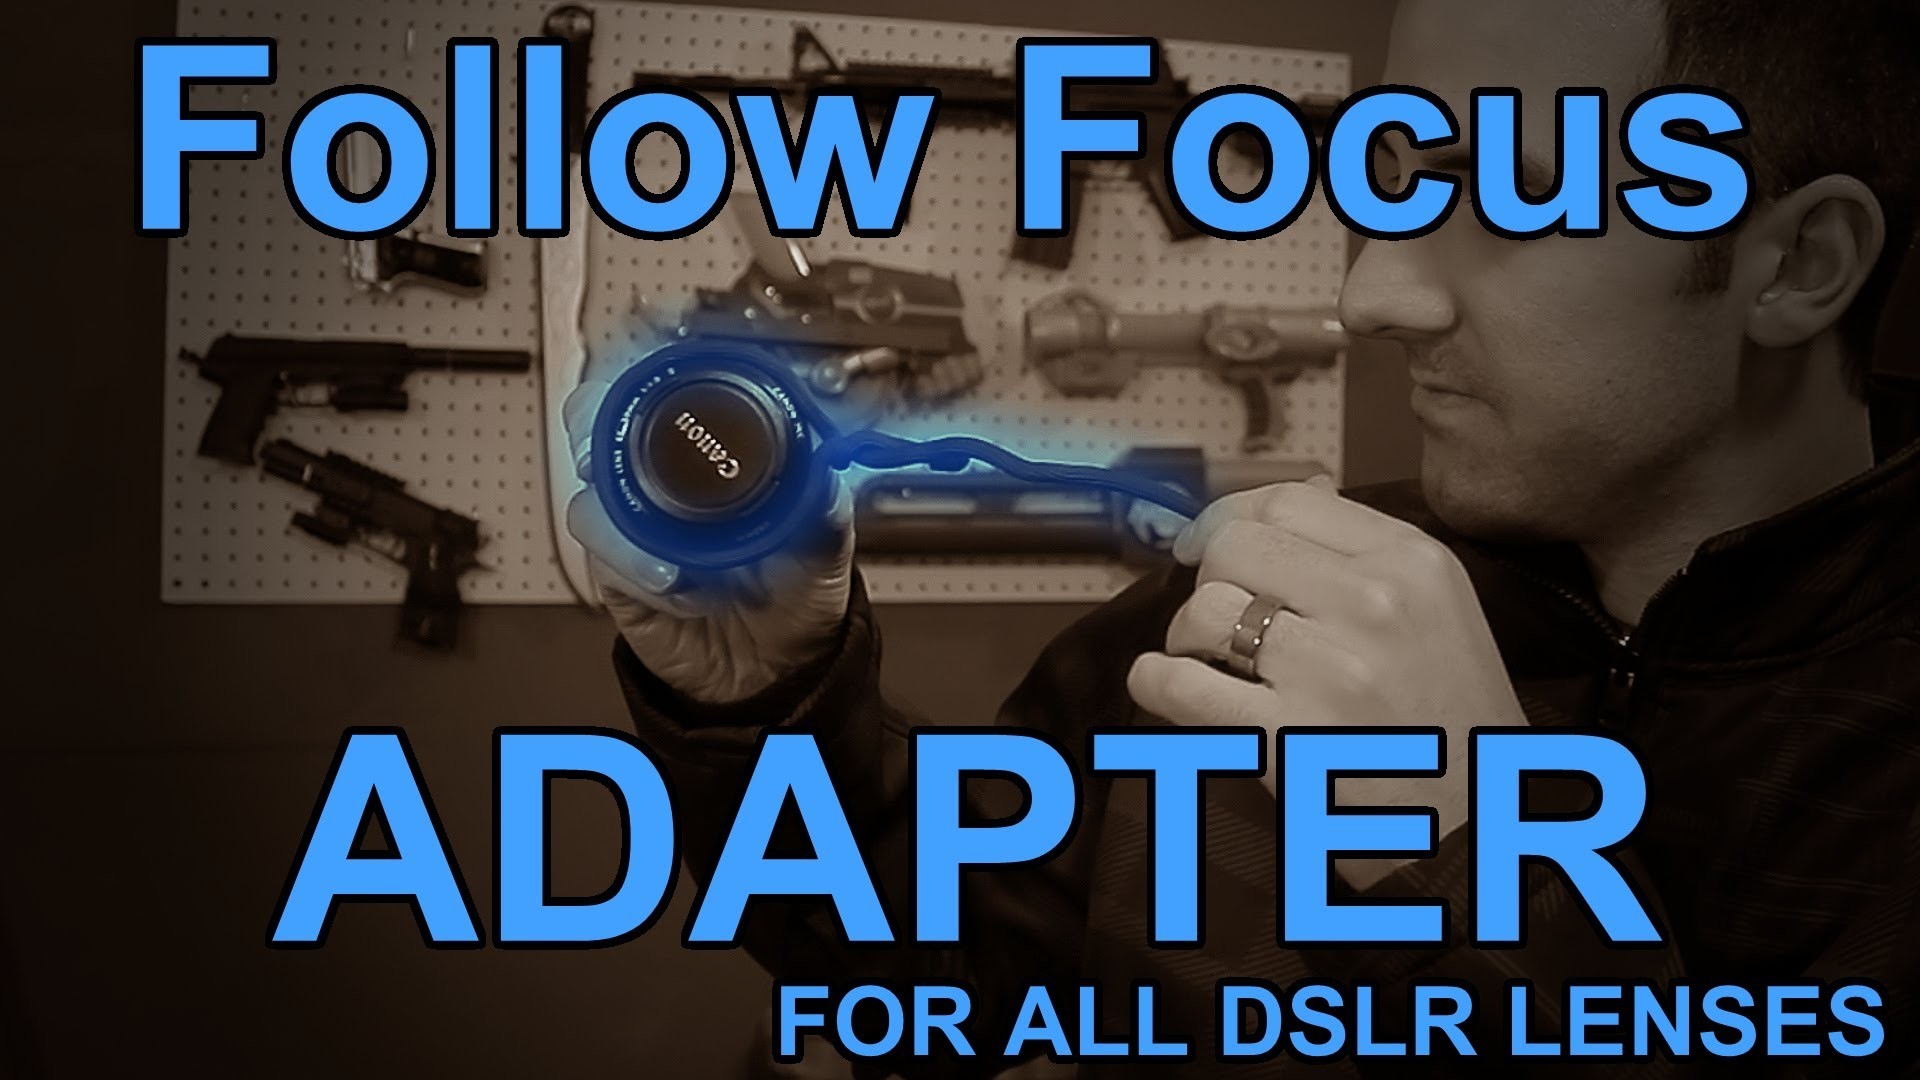 $6 DIY Follow Focus Adapter for All DSLR Lenses